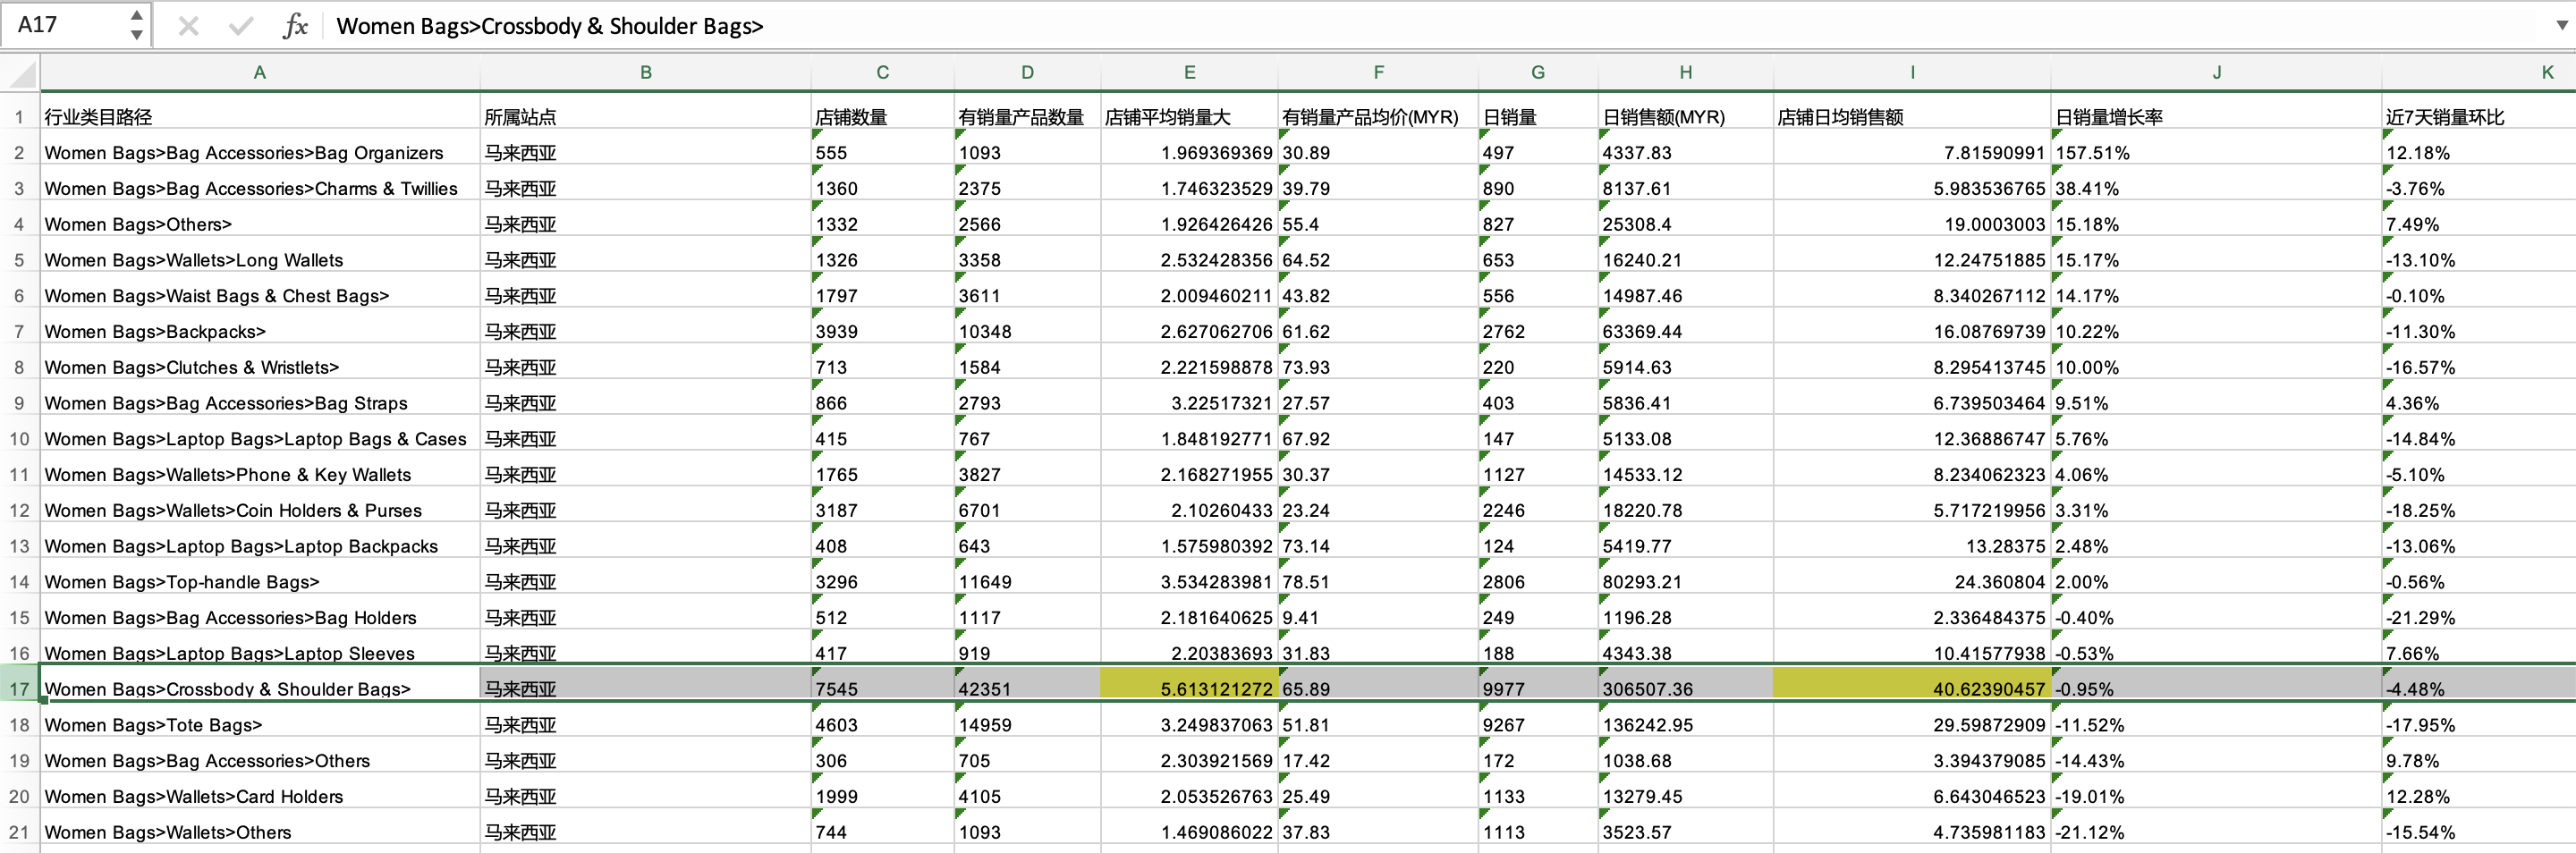 导出Excel 新插入两列 分析哪个类目有空间 当前是开学季的双肩包 还不错 卖得出去 钱也不少